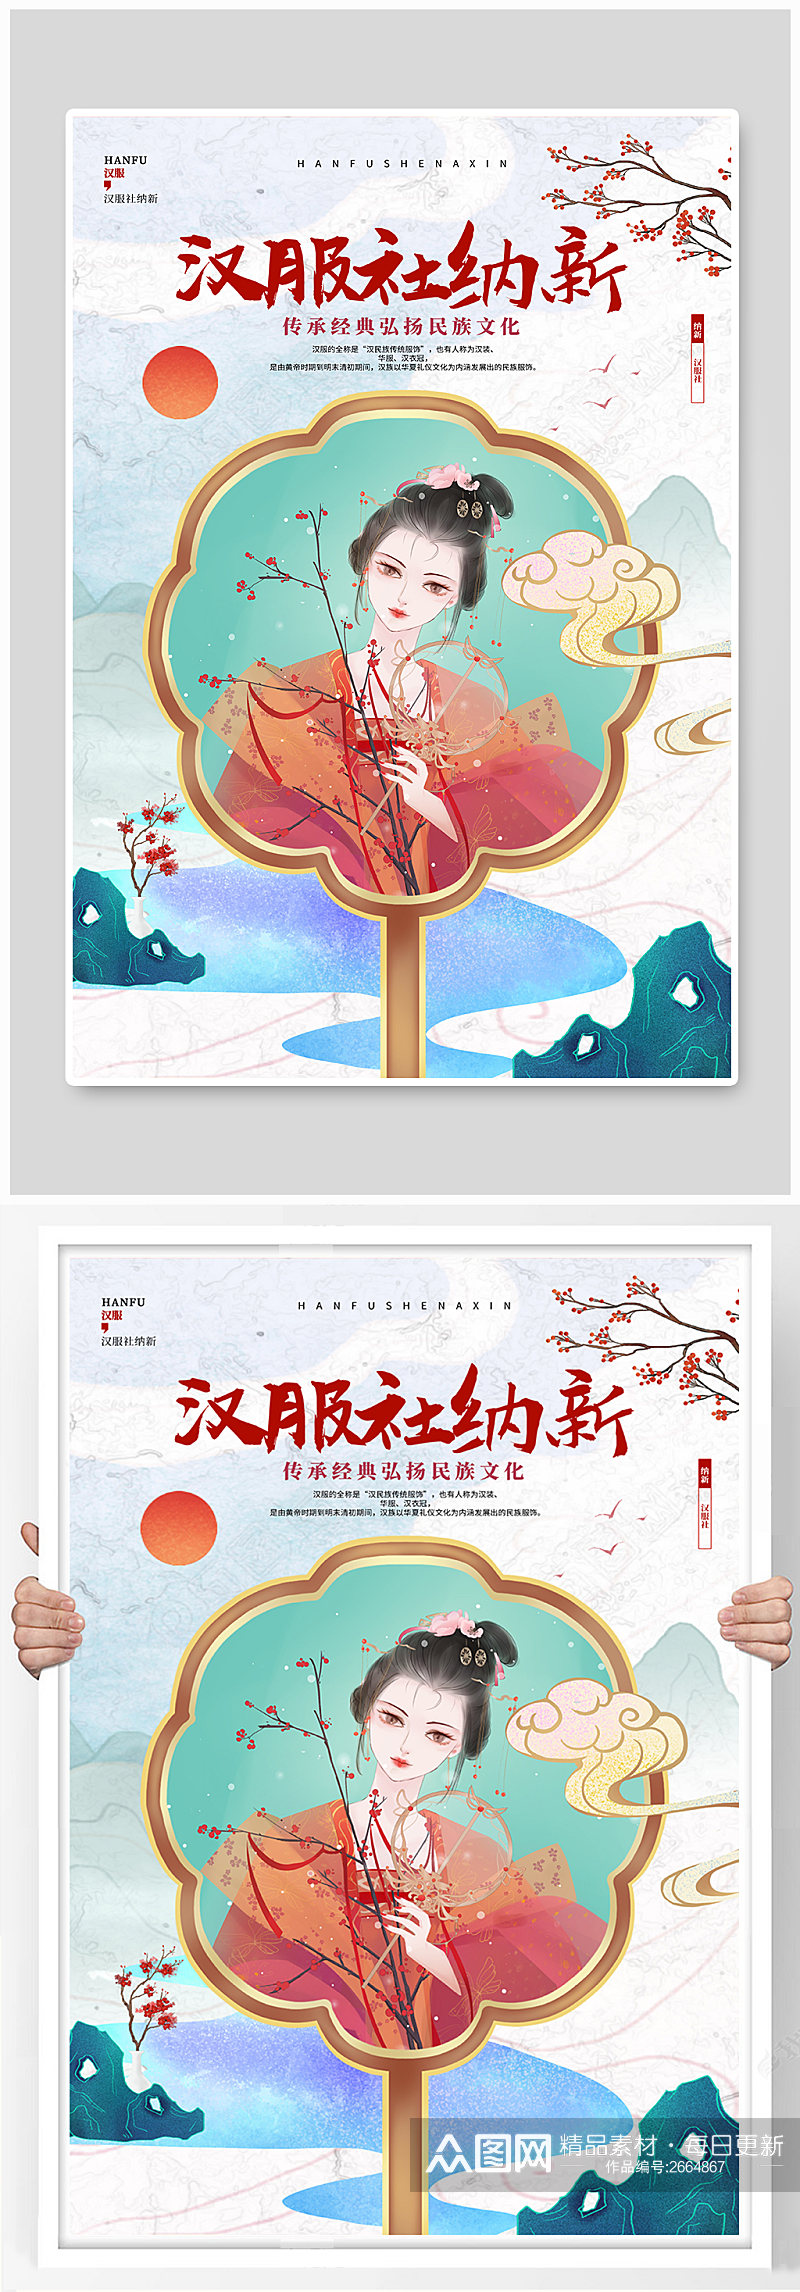 中国风学校汉服社纳新招新宣传海报素材